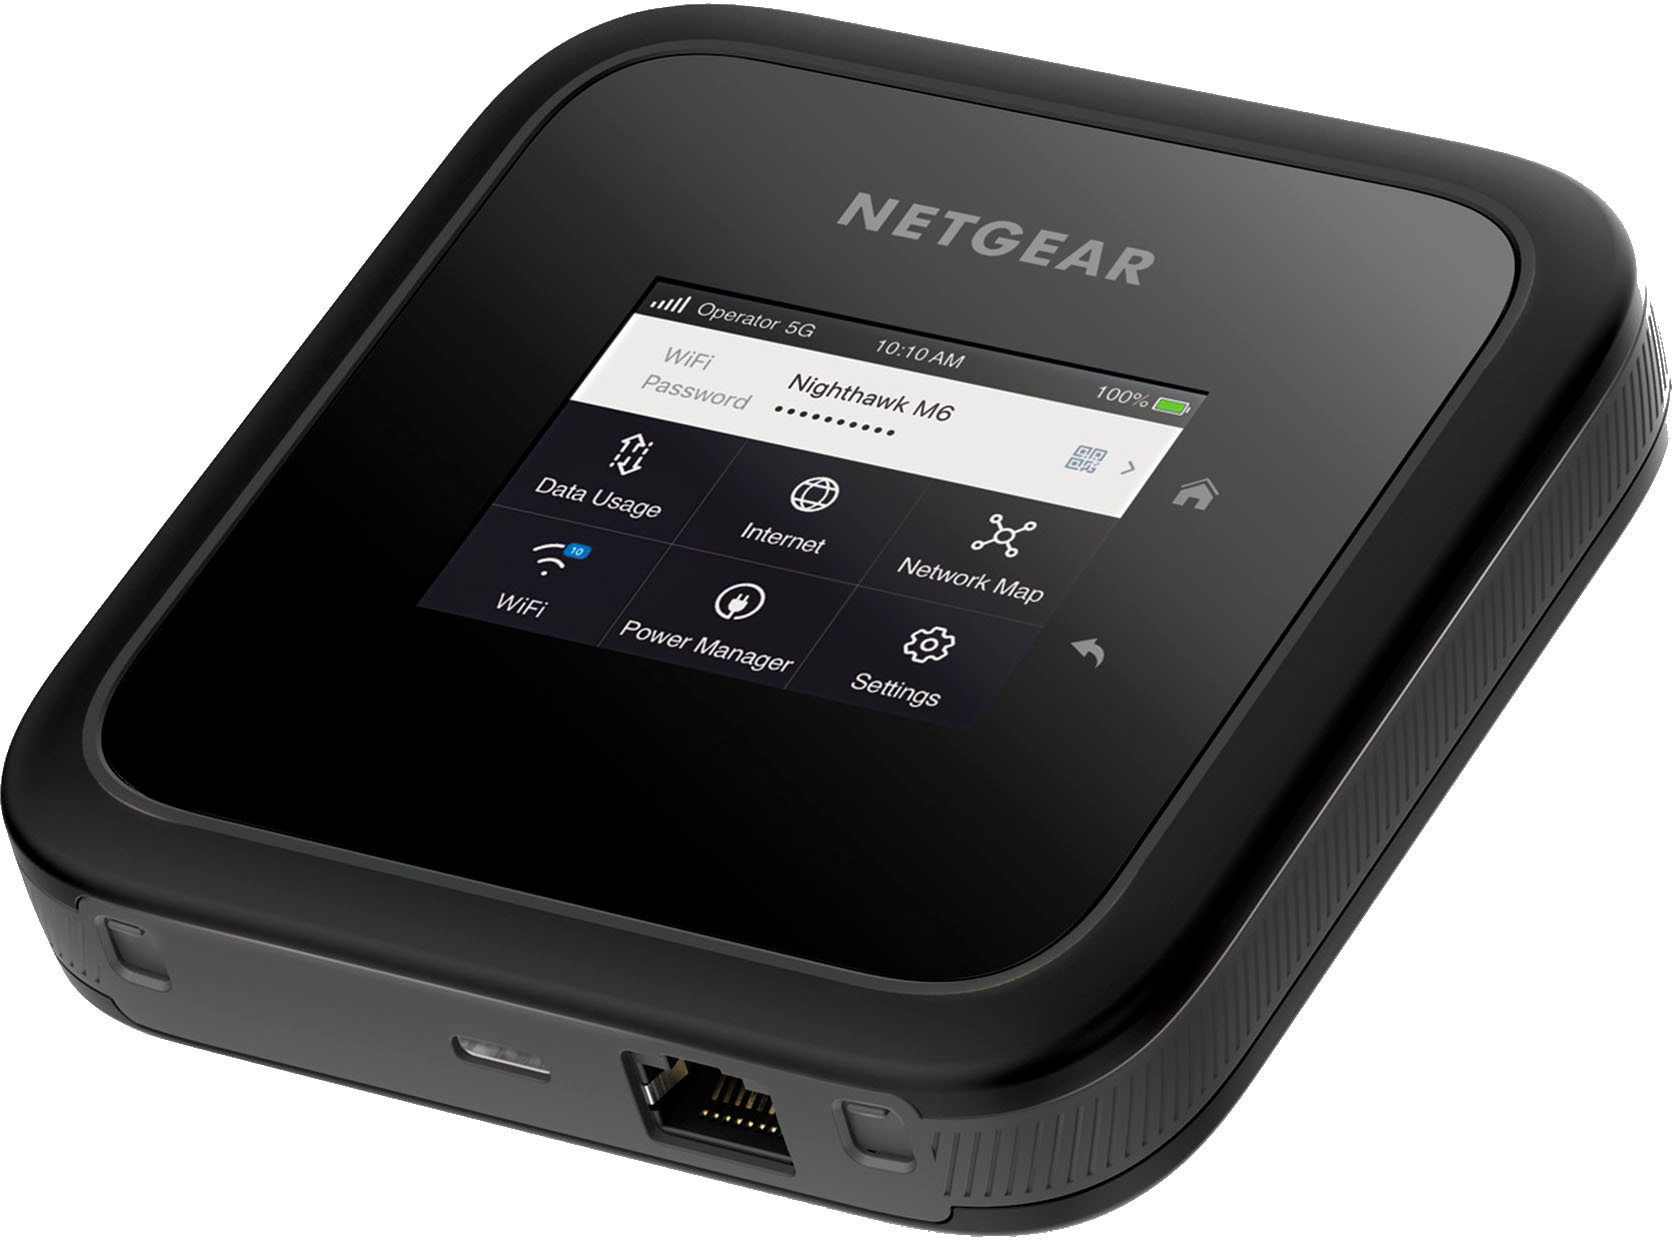 Netgear Nighthawk Mobile Hotspot 5G Router M6